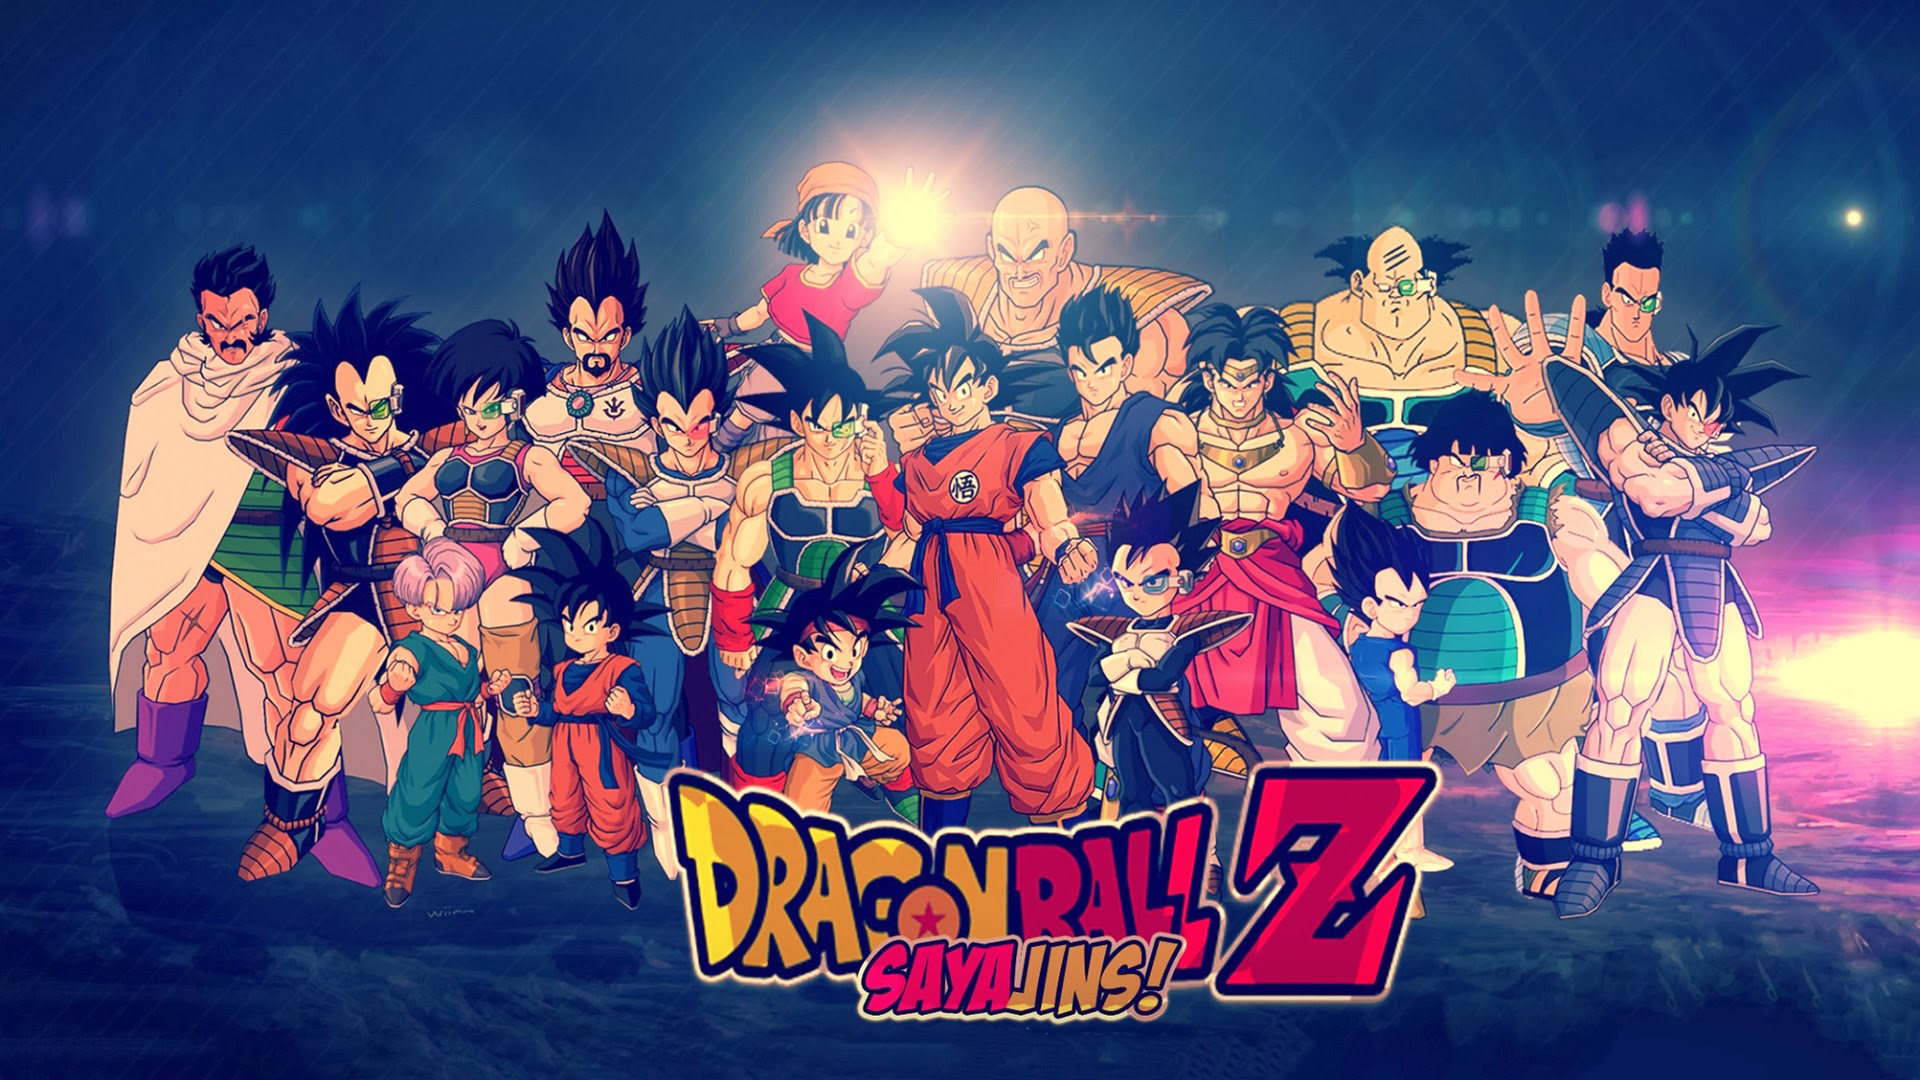 Dragon Ball Z Sayajins HD Wallpaper Background Image